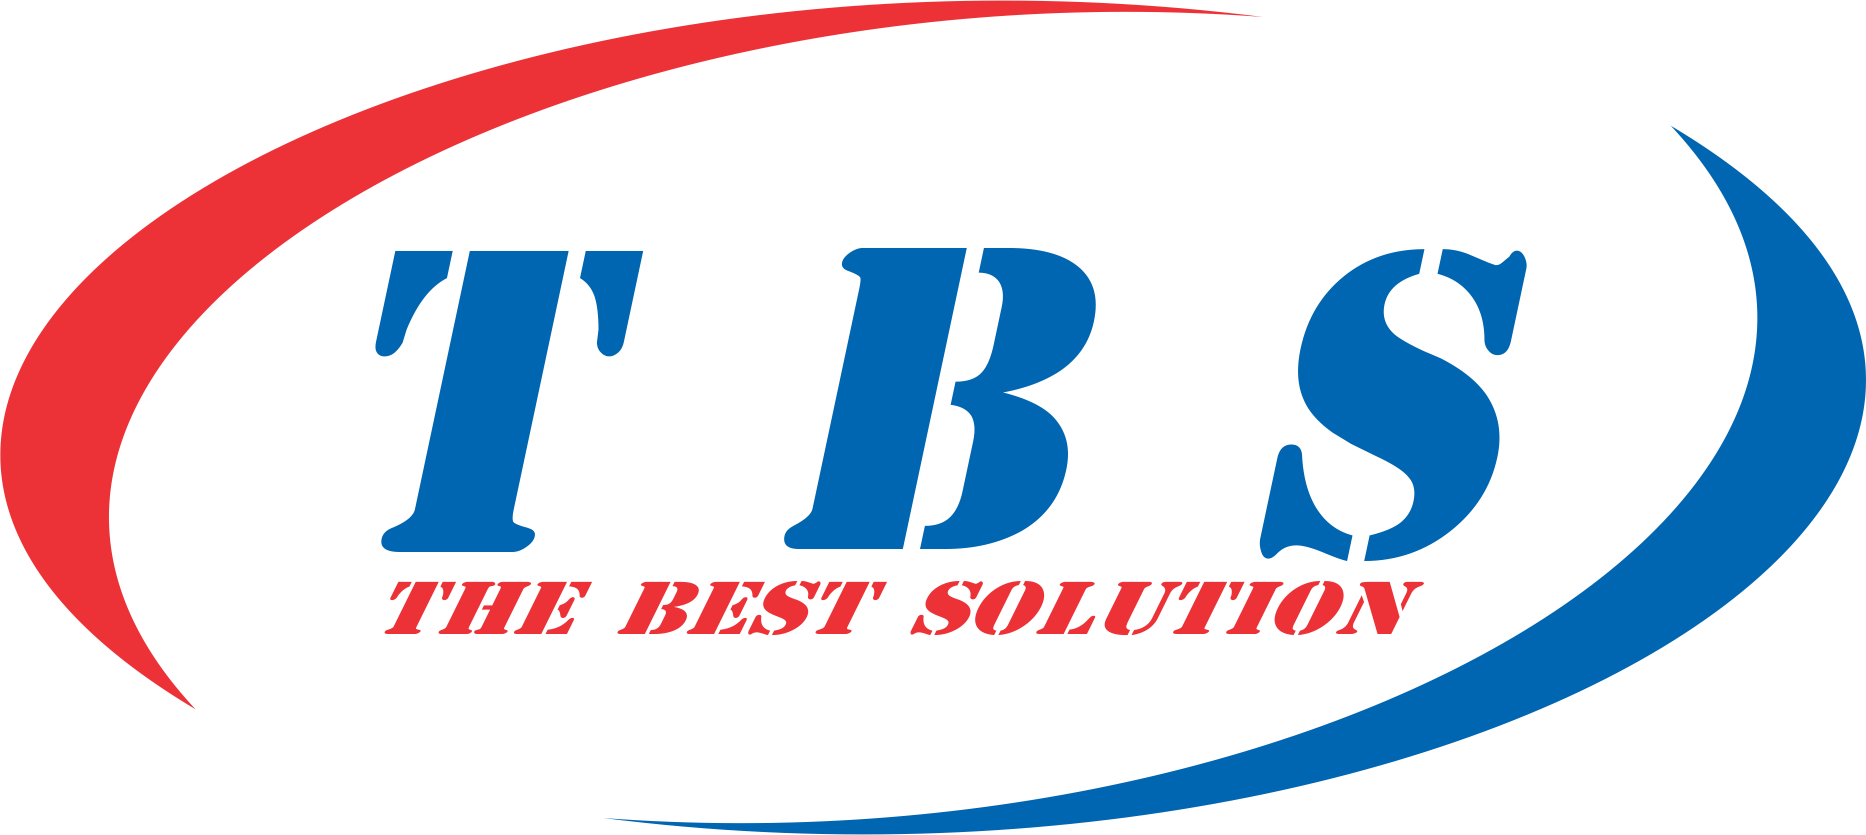 Công ty Cổ phần Tập đoàn TBS (TBS VIỆT NAM)